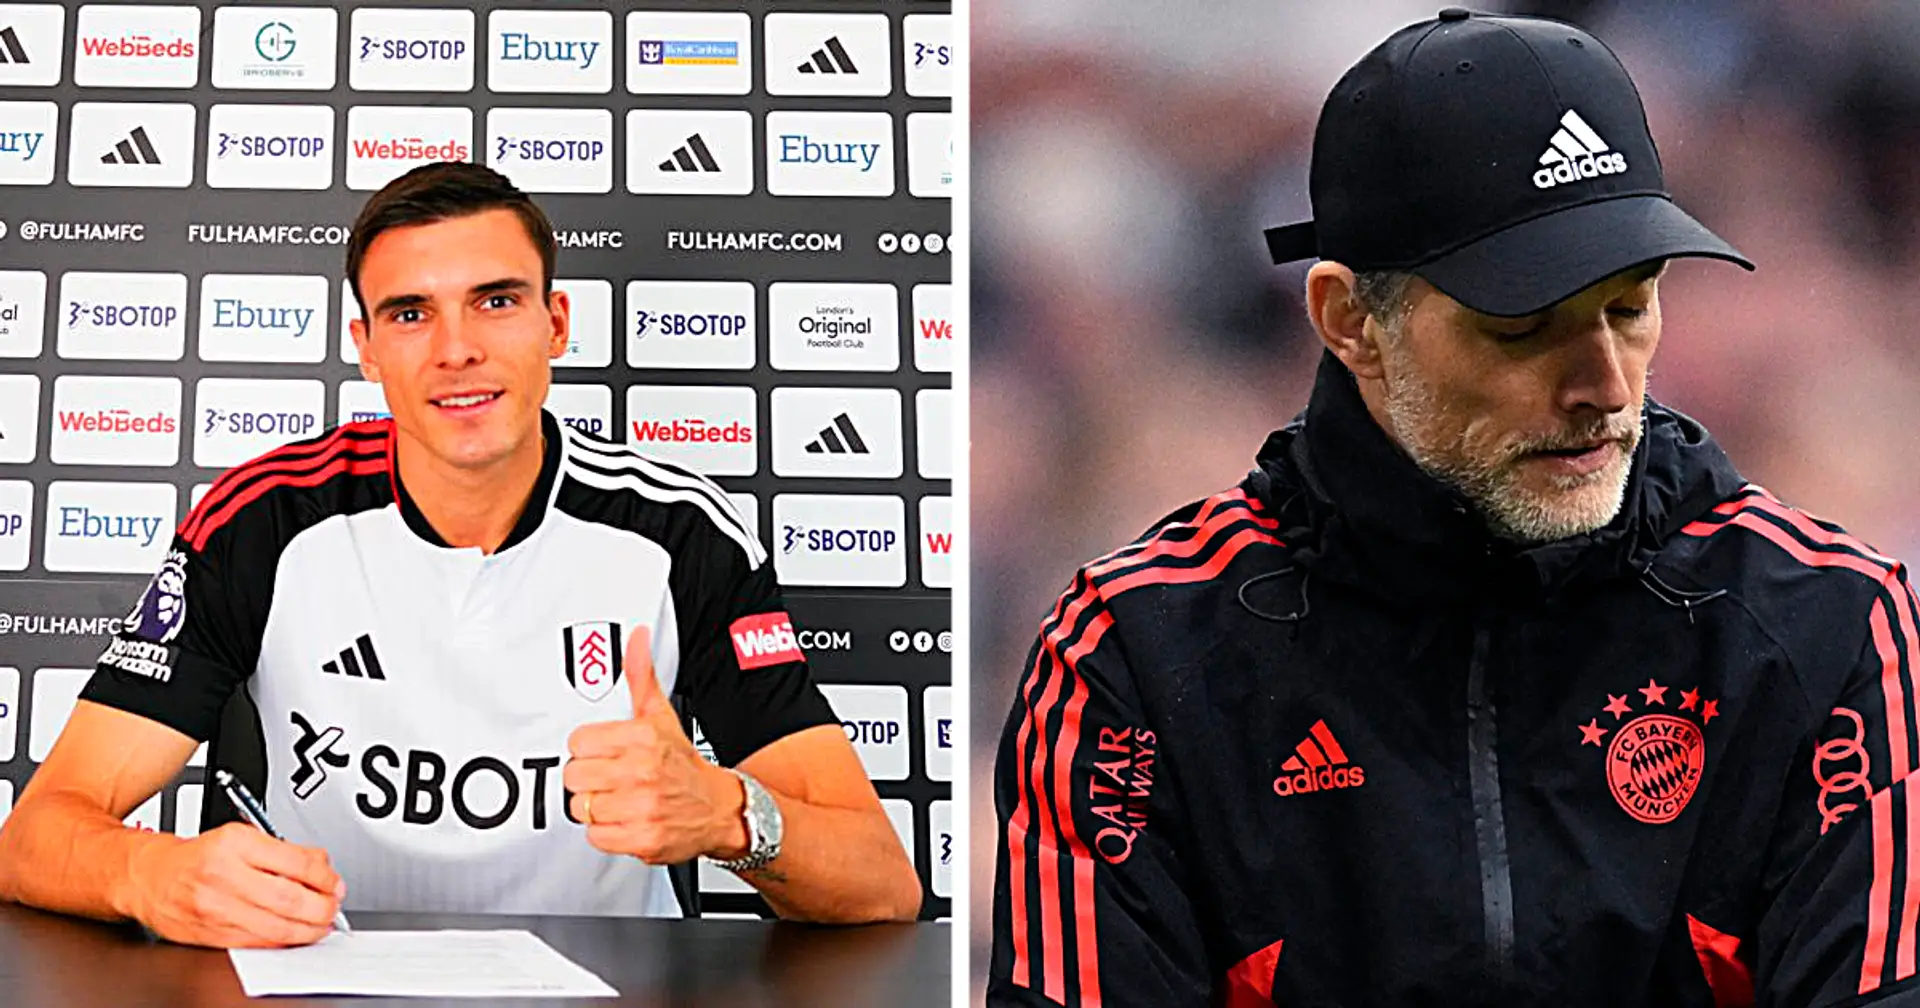 "Man hätte einfach 4 Monate warten können, warum sollte man das machen?": Bayern-Fans reagieren auf Palhinhas Vertragsverlängerung mit Fulham